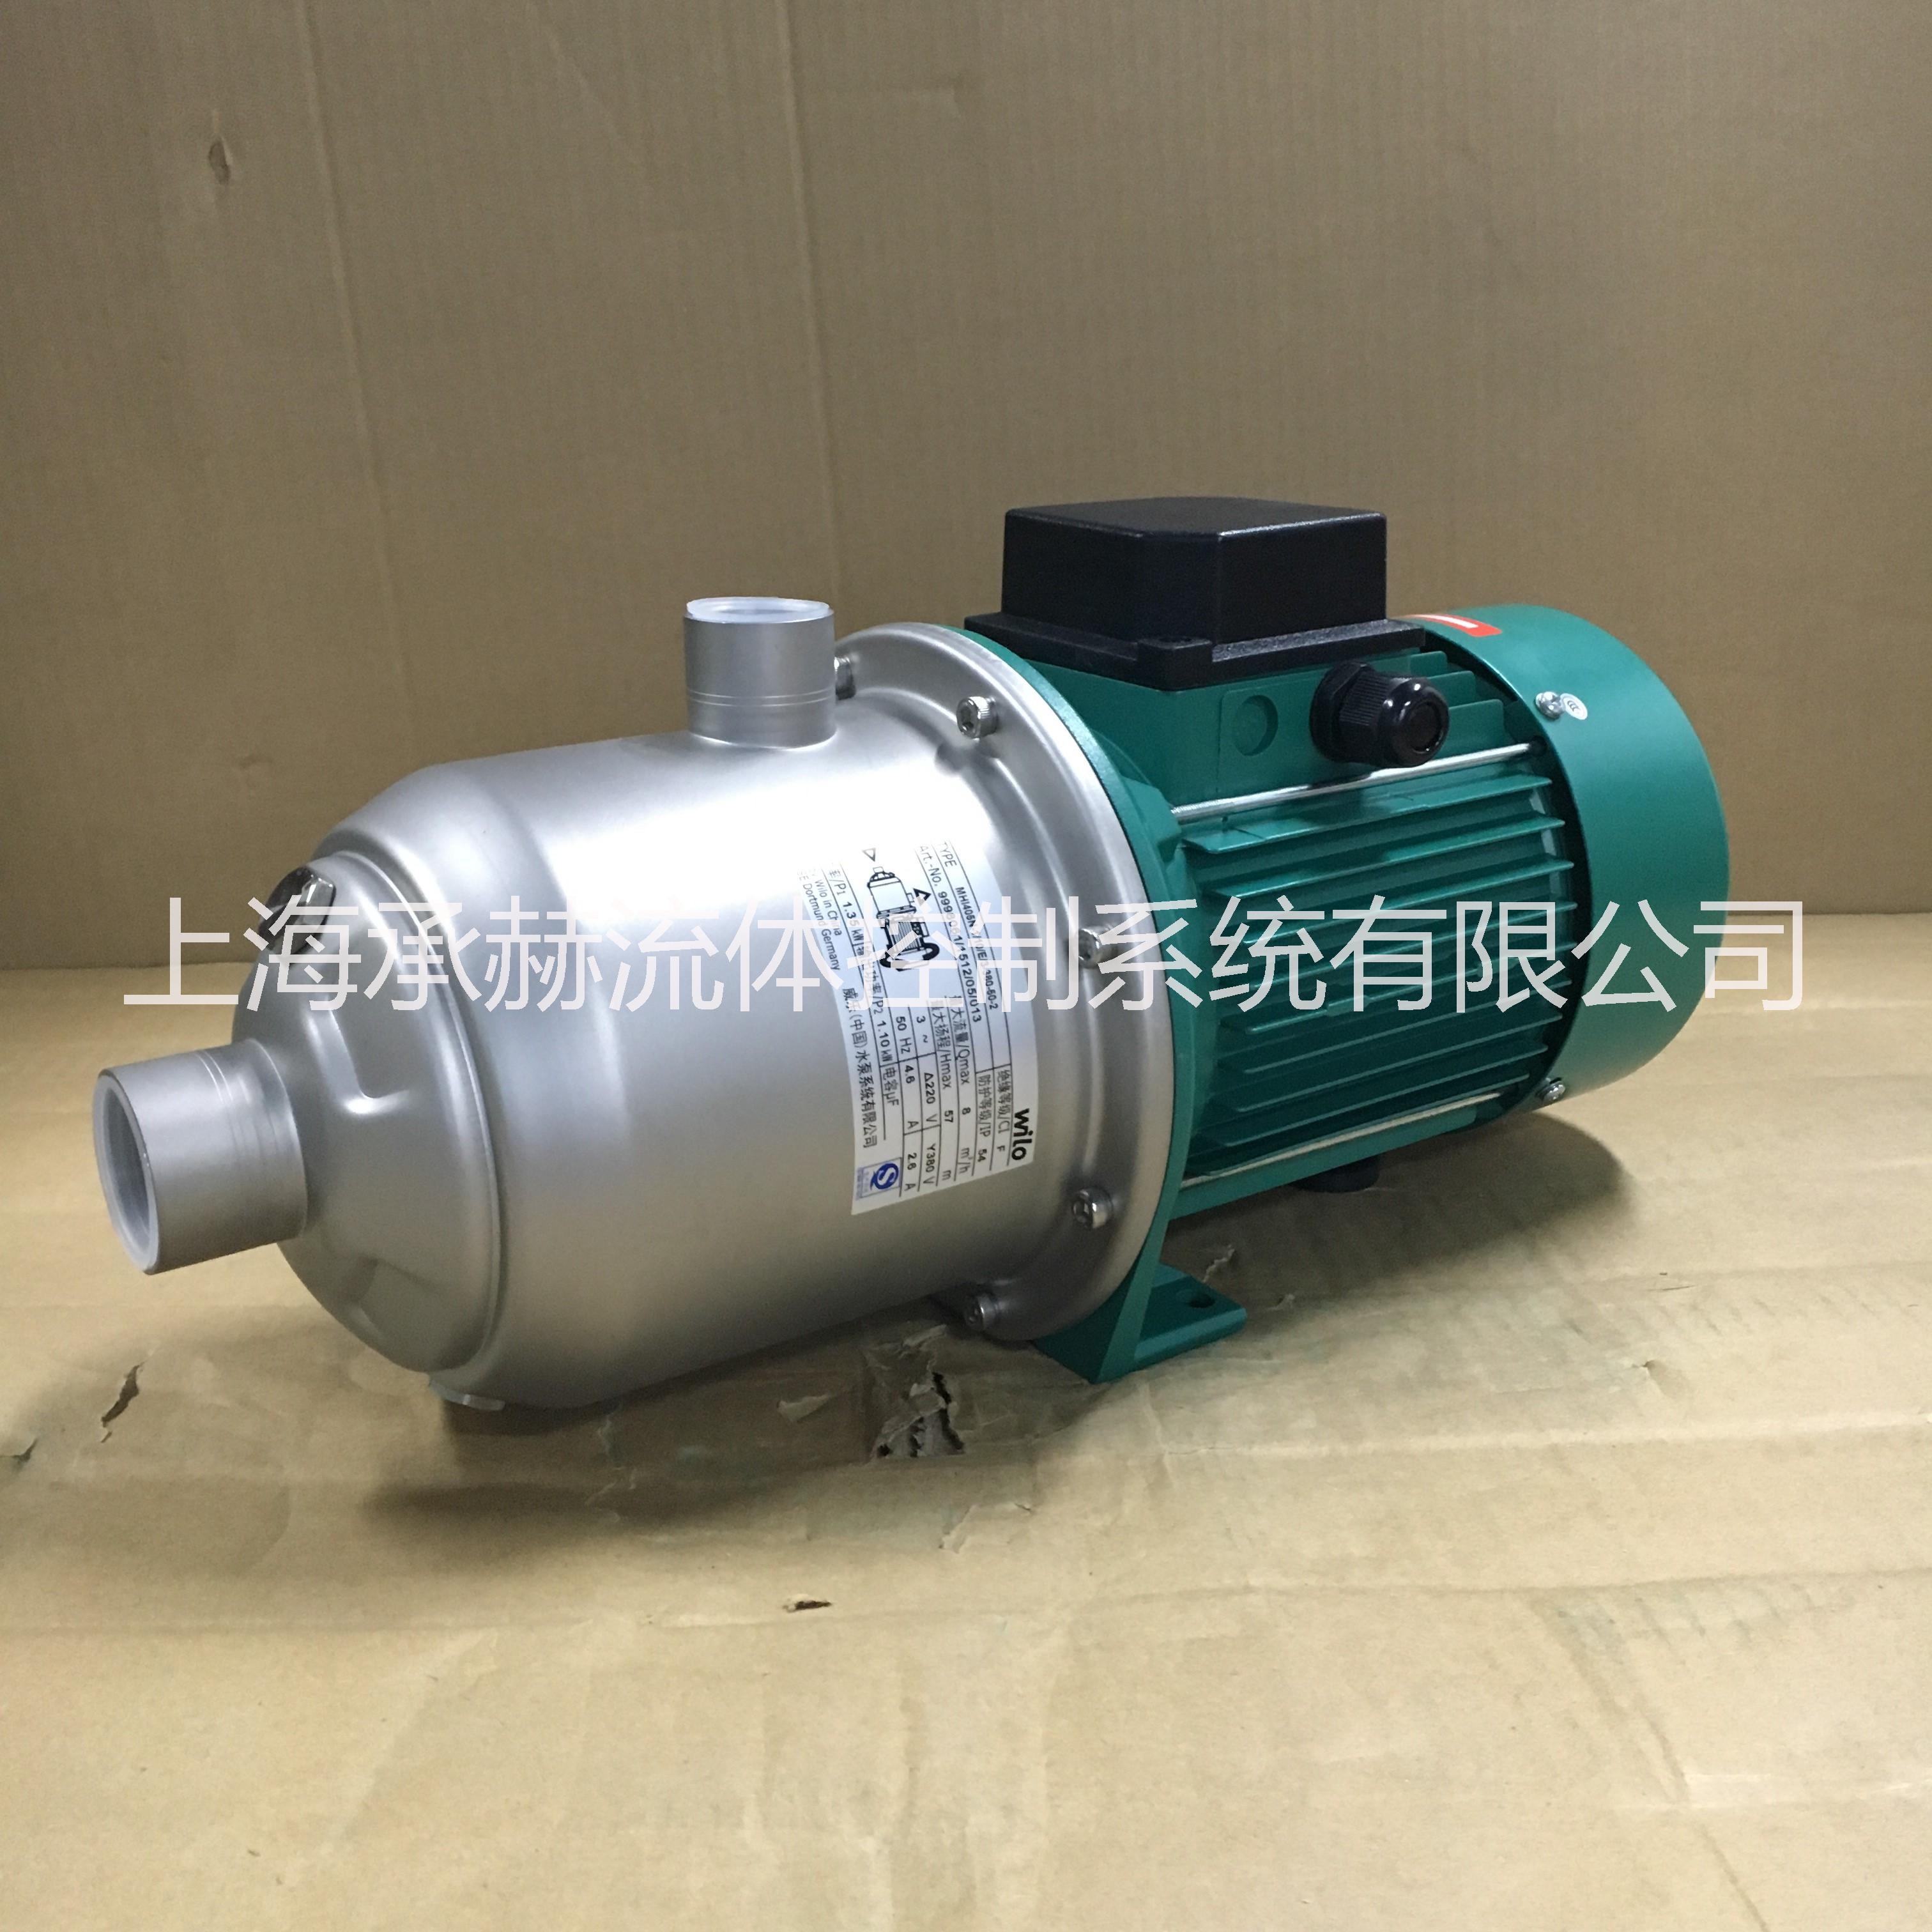 德国威乐水泵MHI405不锈钢卧式离心泵/高层生活用水增压泵图片